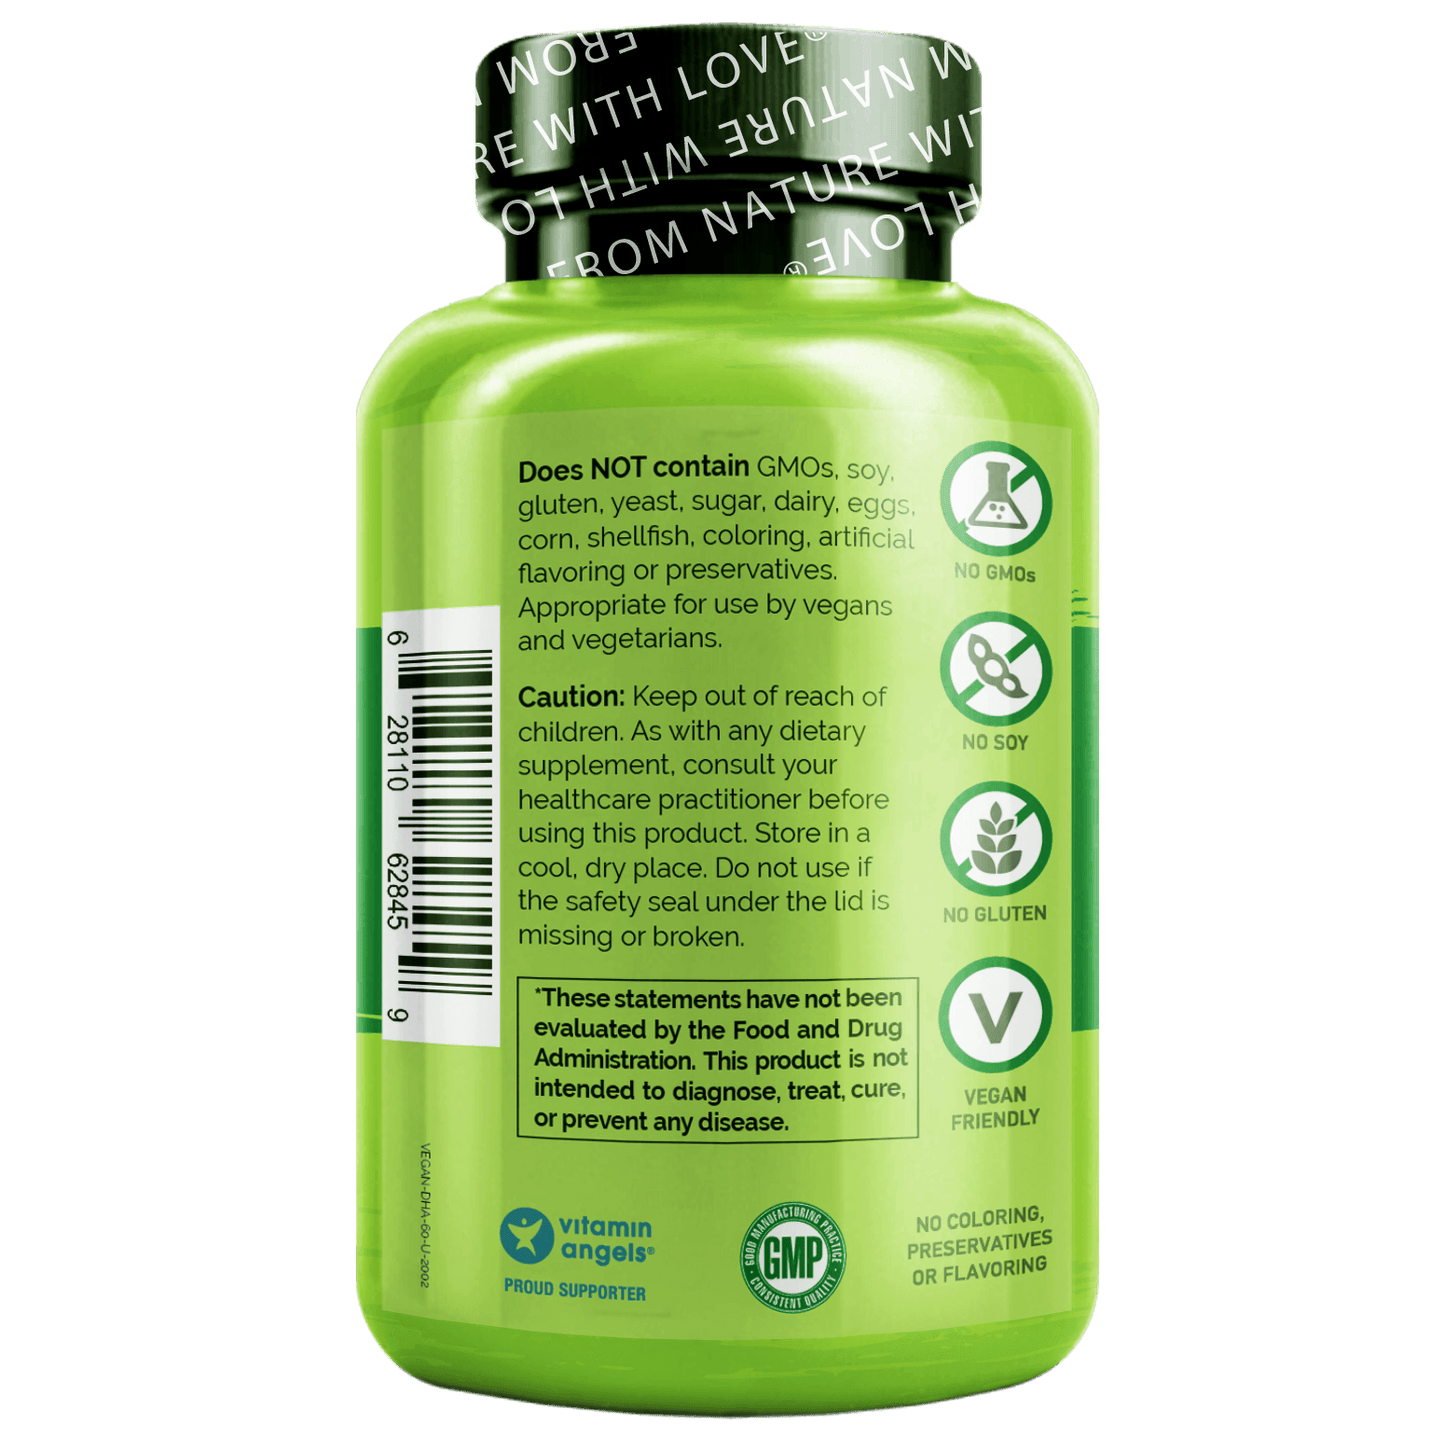 Vegan DHA - Omega-3 from Algae